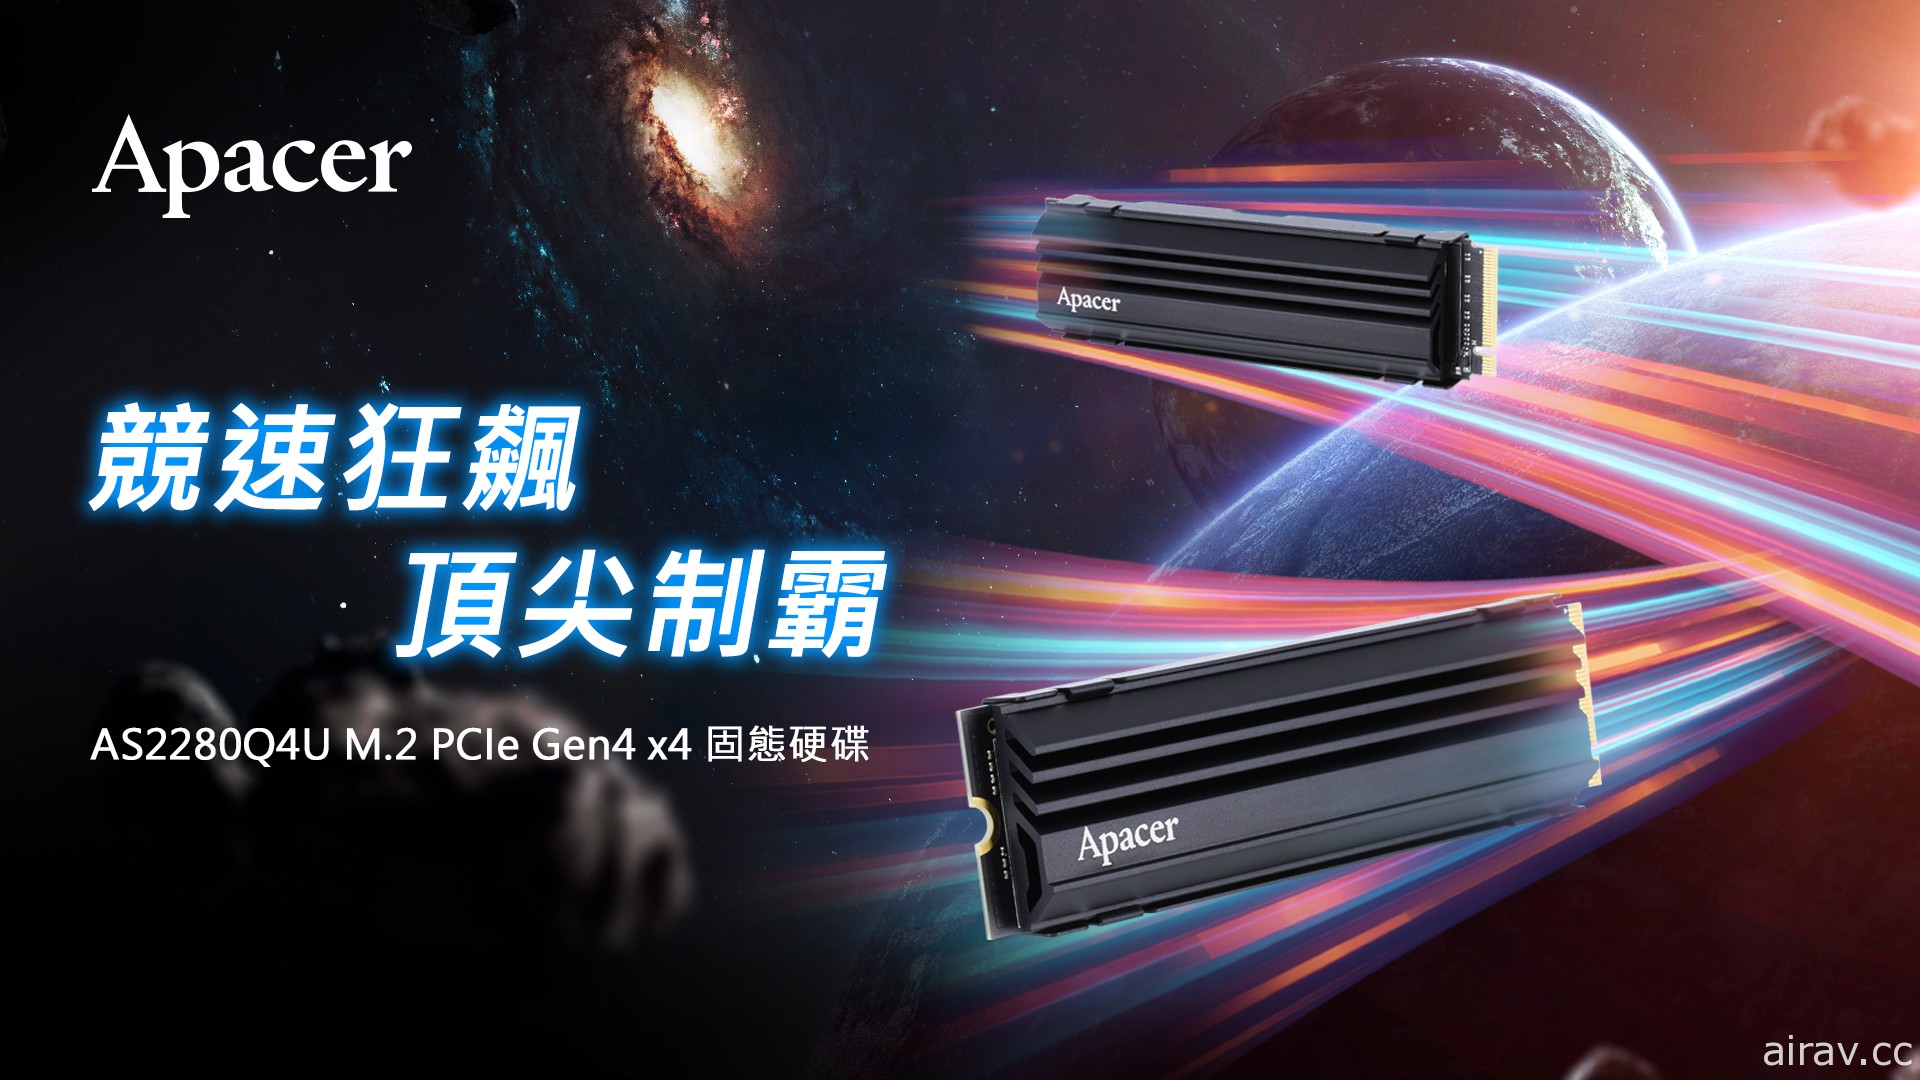 宇瞻科技宣布推出 AS2280Q4U M.2 PCIe Gen4 極速固態硬碟 支援 PS5 擴充用途